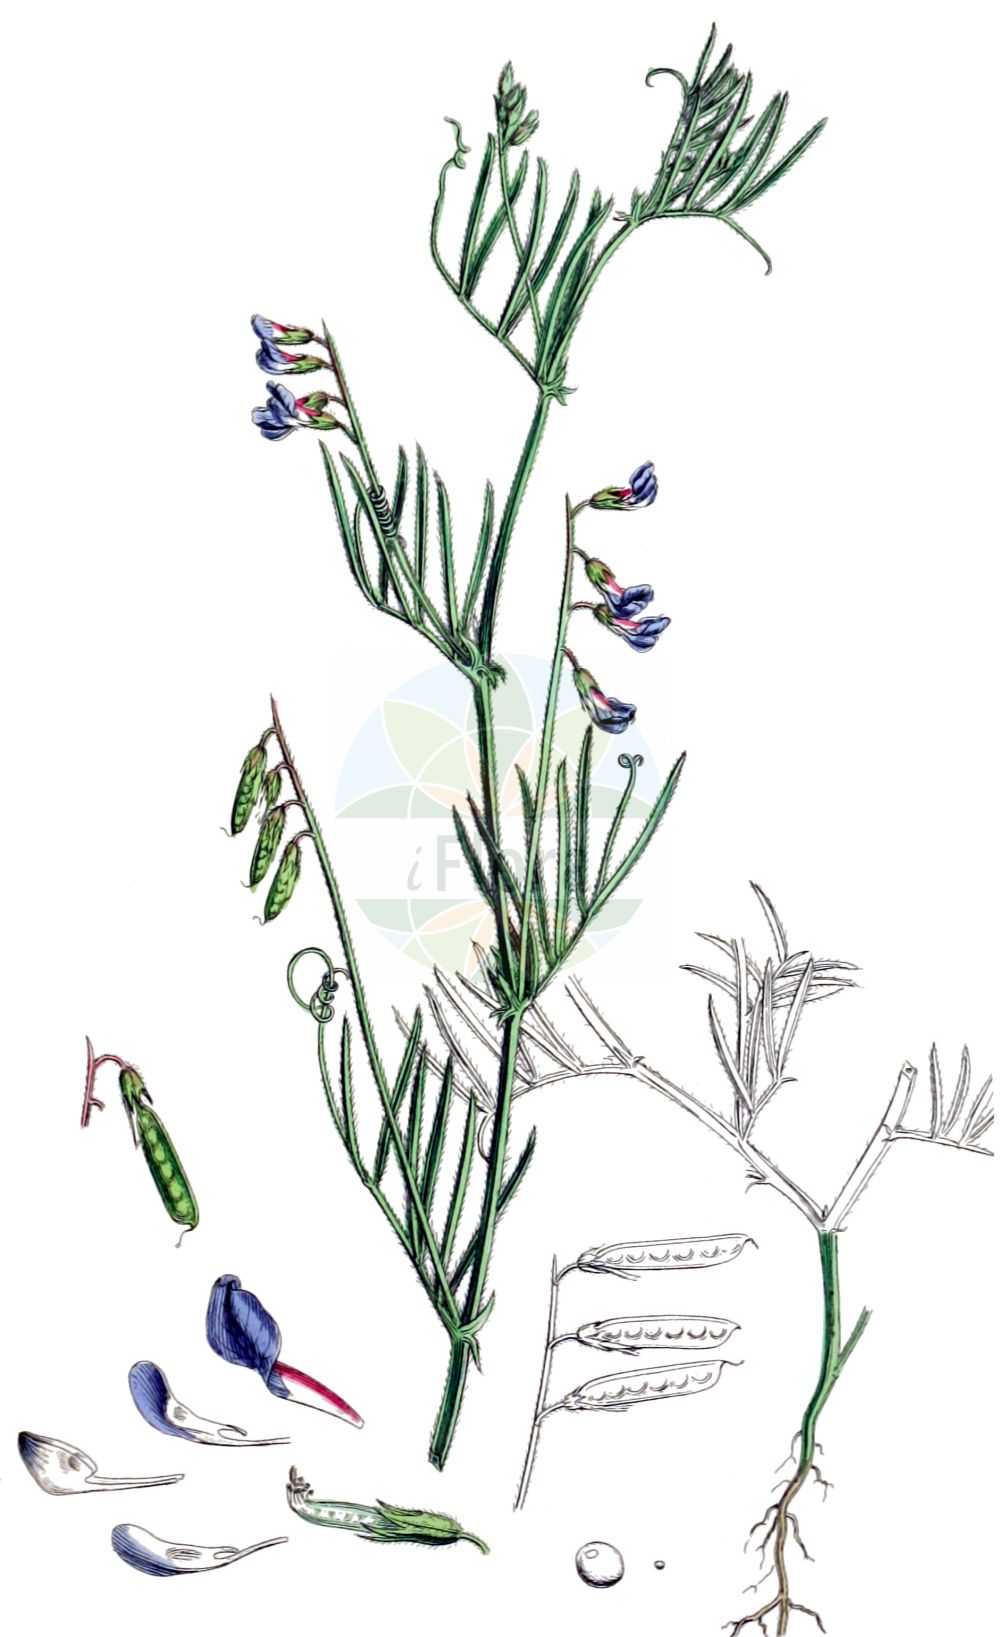 Historische Abbildung von Vicia parviflora (Zierliche Wicke - Slender Tare). Das Bild zeigt Blatt, Bluete, Frucht und Same. ---- Historical Drawing of Vicia parviflora (Zierliche Wicke - Slender Tare). The image is showing leaf, flower, fruit and seed.(Vicia parviflora,Zierliche Wicke,Slender Tare,Ervum gracile,Vicia gracilis,Vicia laxiflora,Vicia parviflora,Vicia tetrasperma var. tenuissima,Zierliche Wicke,Slender Tare,Slender Vetch,Vicia,Wicke,Vetch,Fabaceae,Schmetterlingsblütler,Pea family,Blatt,Bluete,Frucht,Same,leaf,flower,fruit,seed,Sowerby (1790-1813))